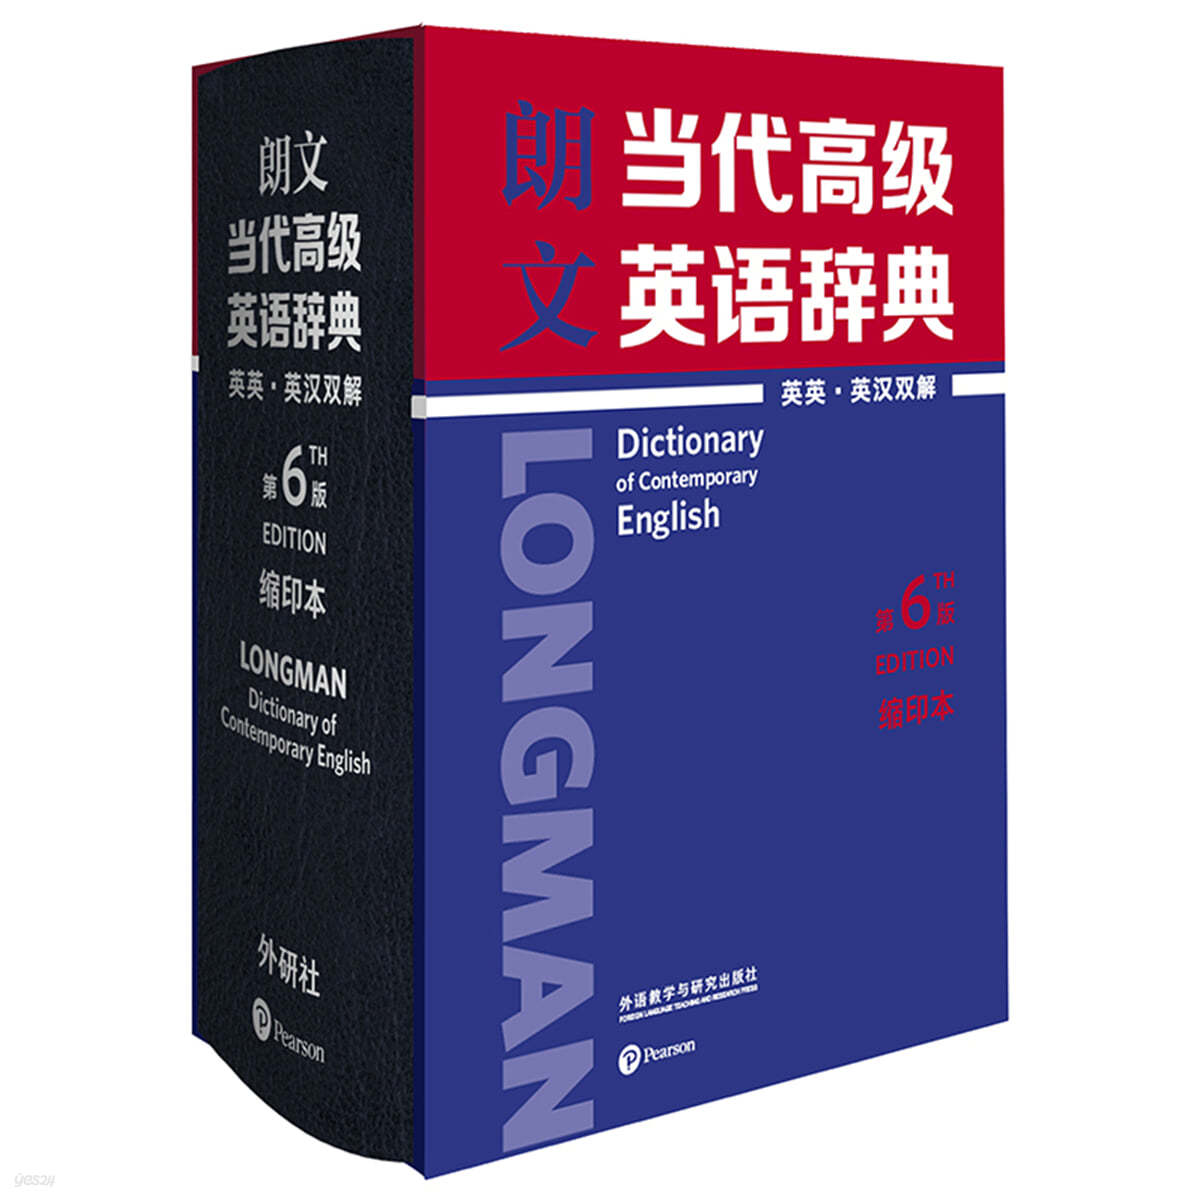 랑문당대고급영어사전 (영영, 영중 번역)(제6판)(축약판) 朗文當代高級英語辭典(英英.英漢雙解)(第6版)(縮印本) Longman Advanced Dictionary of Contemporary English